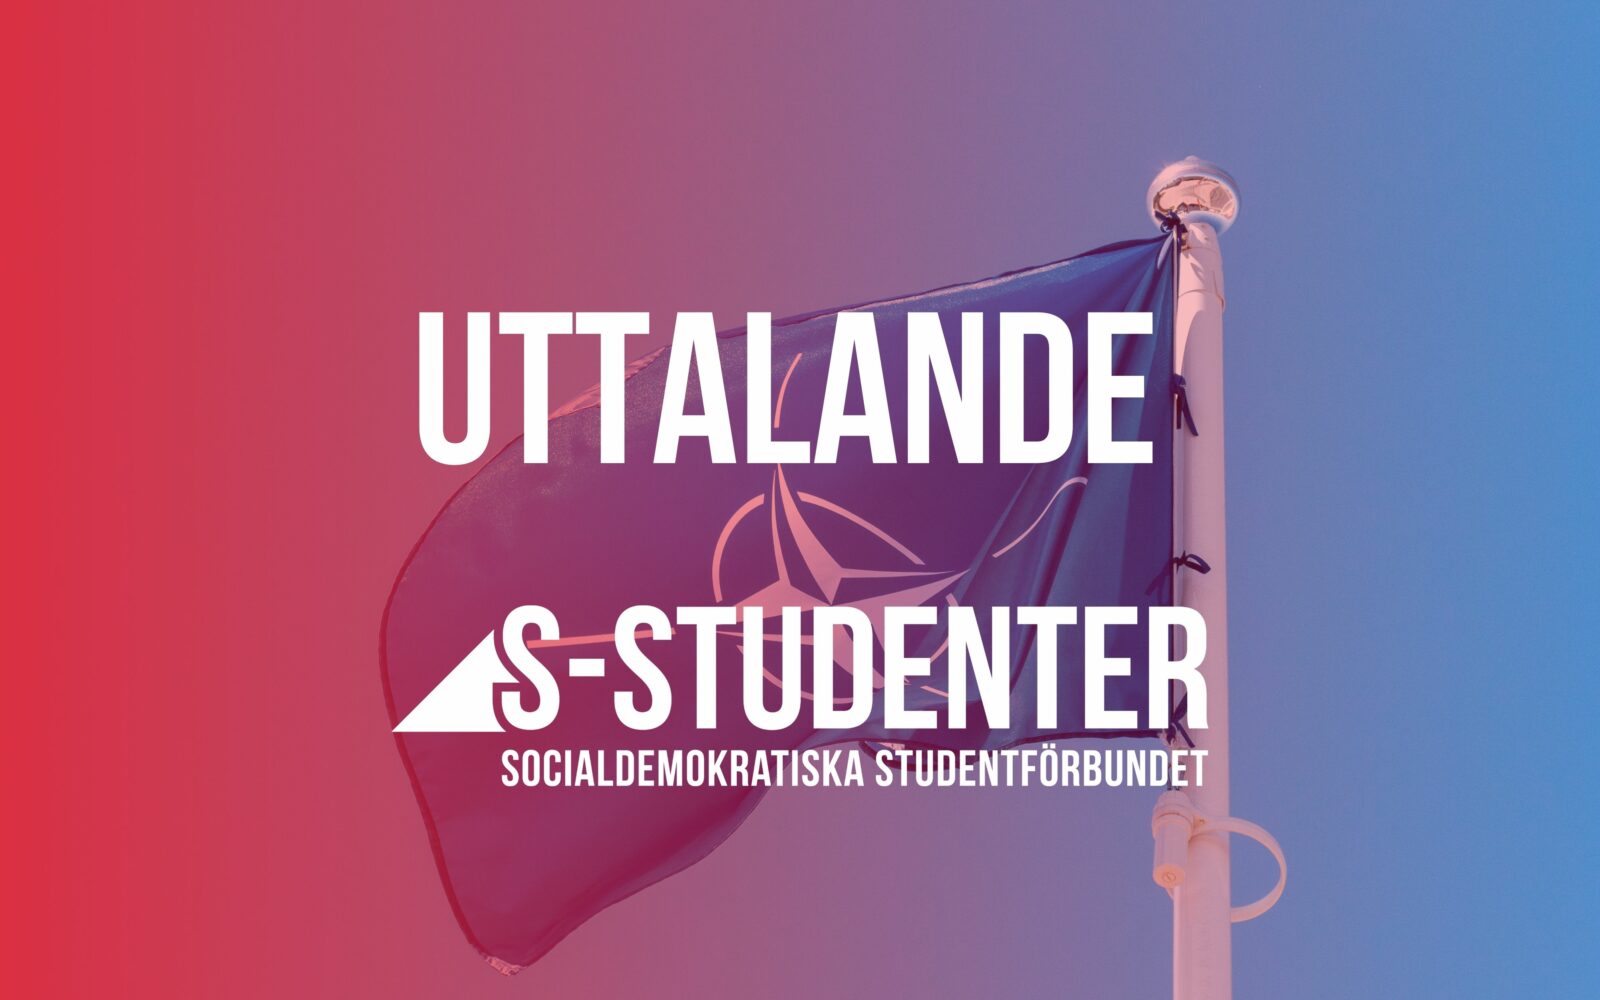 Socialdemokratiska studentförbundets säger nej till North Atlantic Treaty Organization (NATO)